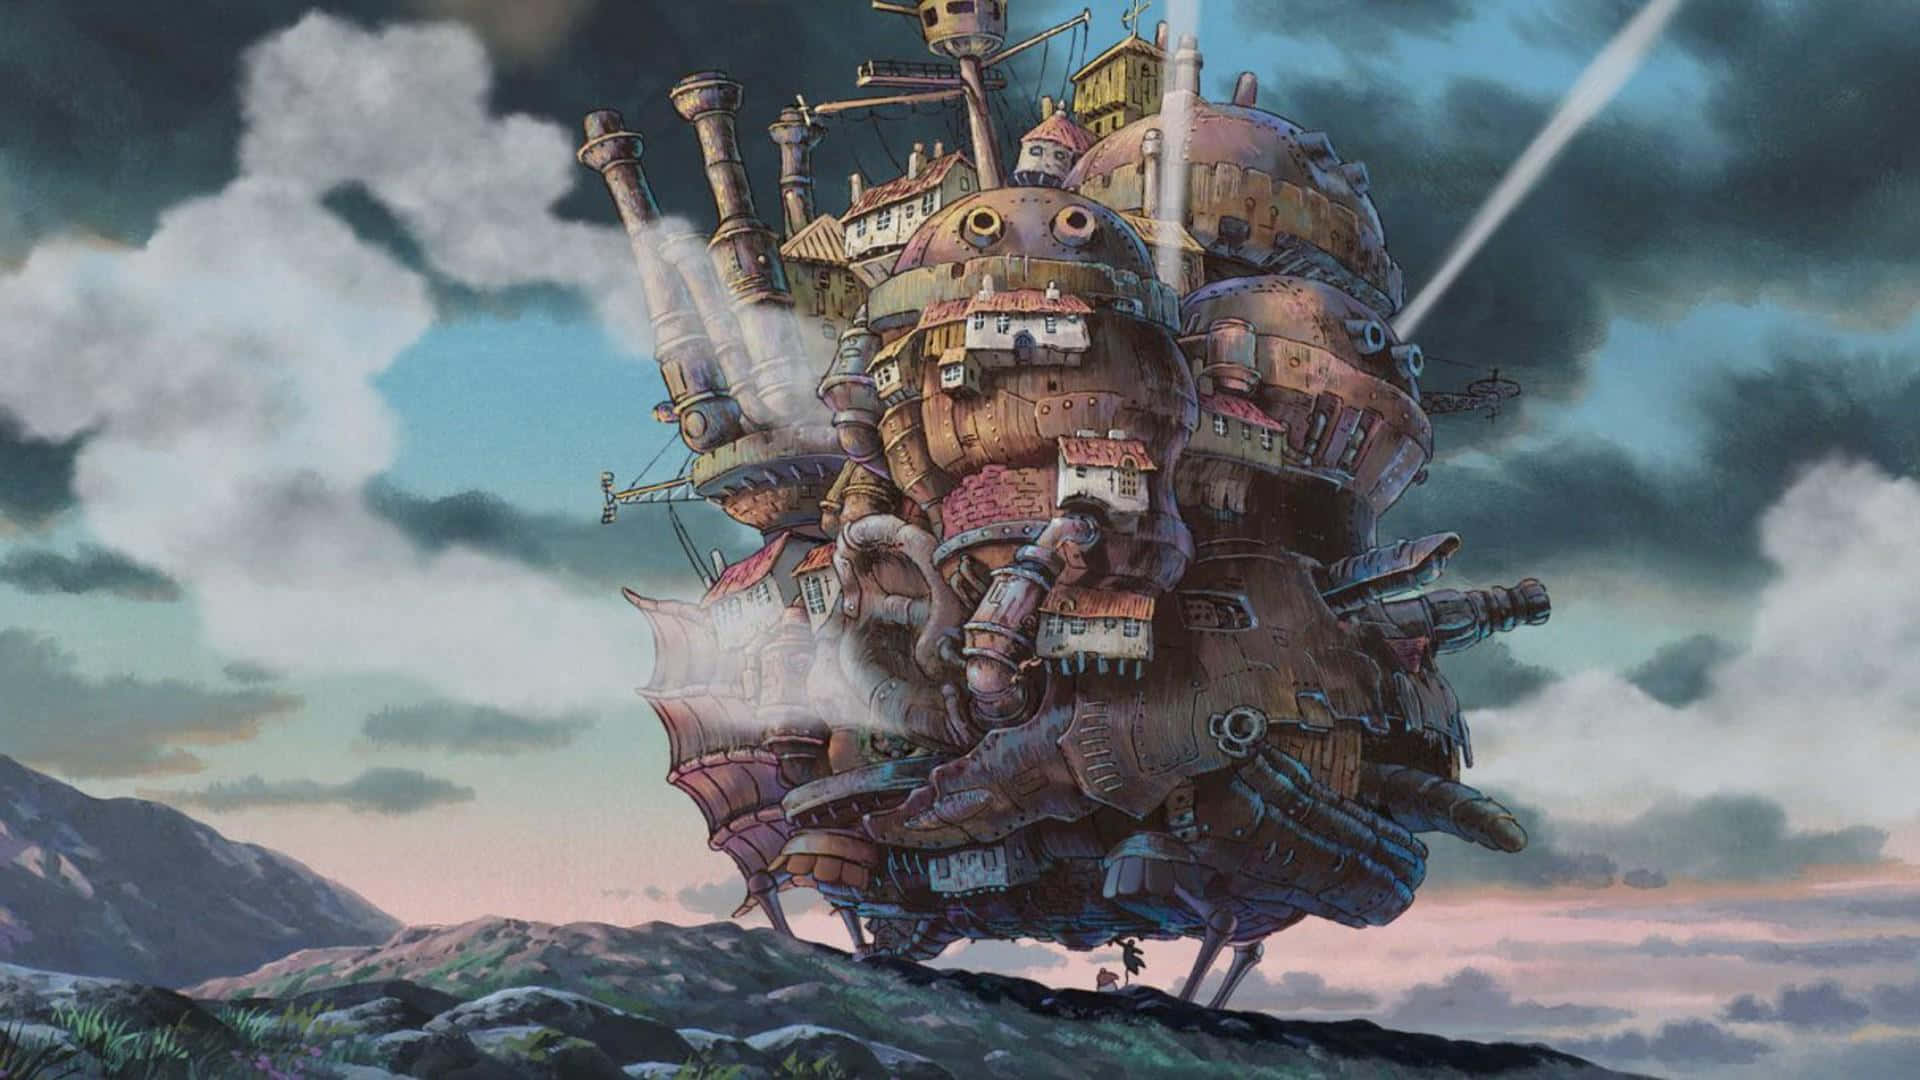 Et drømmende landskab af Studio Ghibli vidunderlighed. Wallpaper